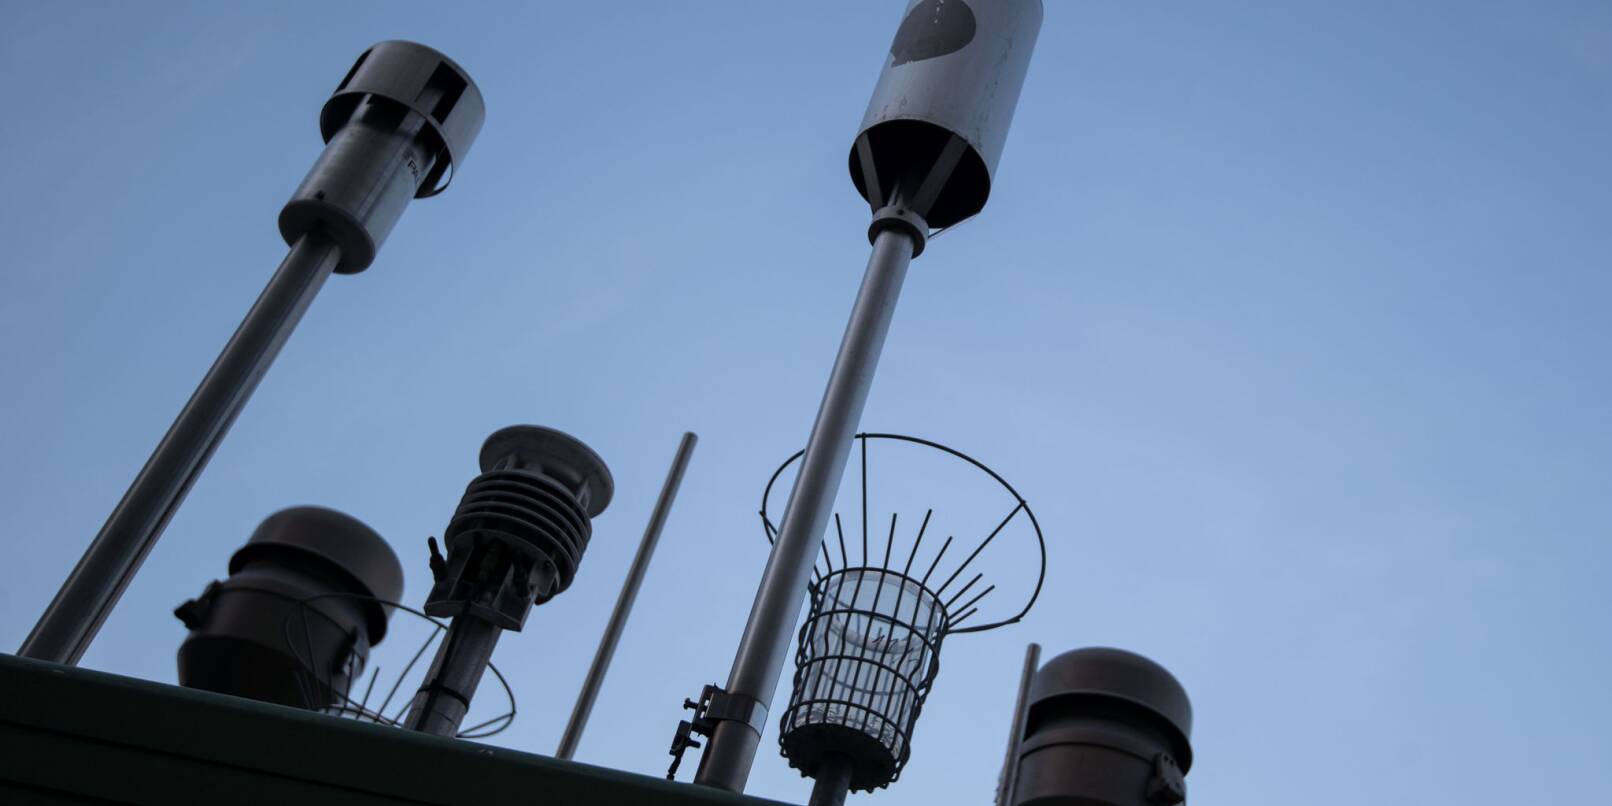 Messgeräte stehen auf einer Luft-Messstation der Landesanstalt für Umwelt Baden-Württemberg (LUBW) in der Stuttgarter Innenstadt.